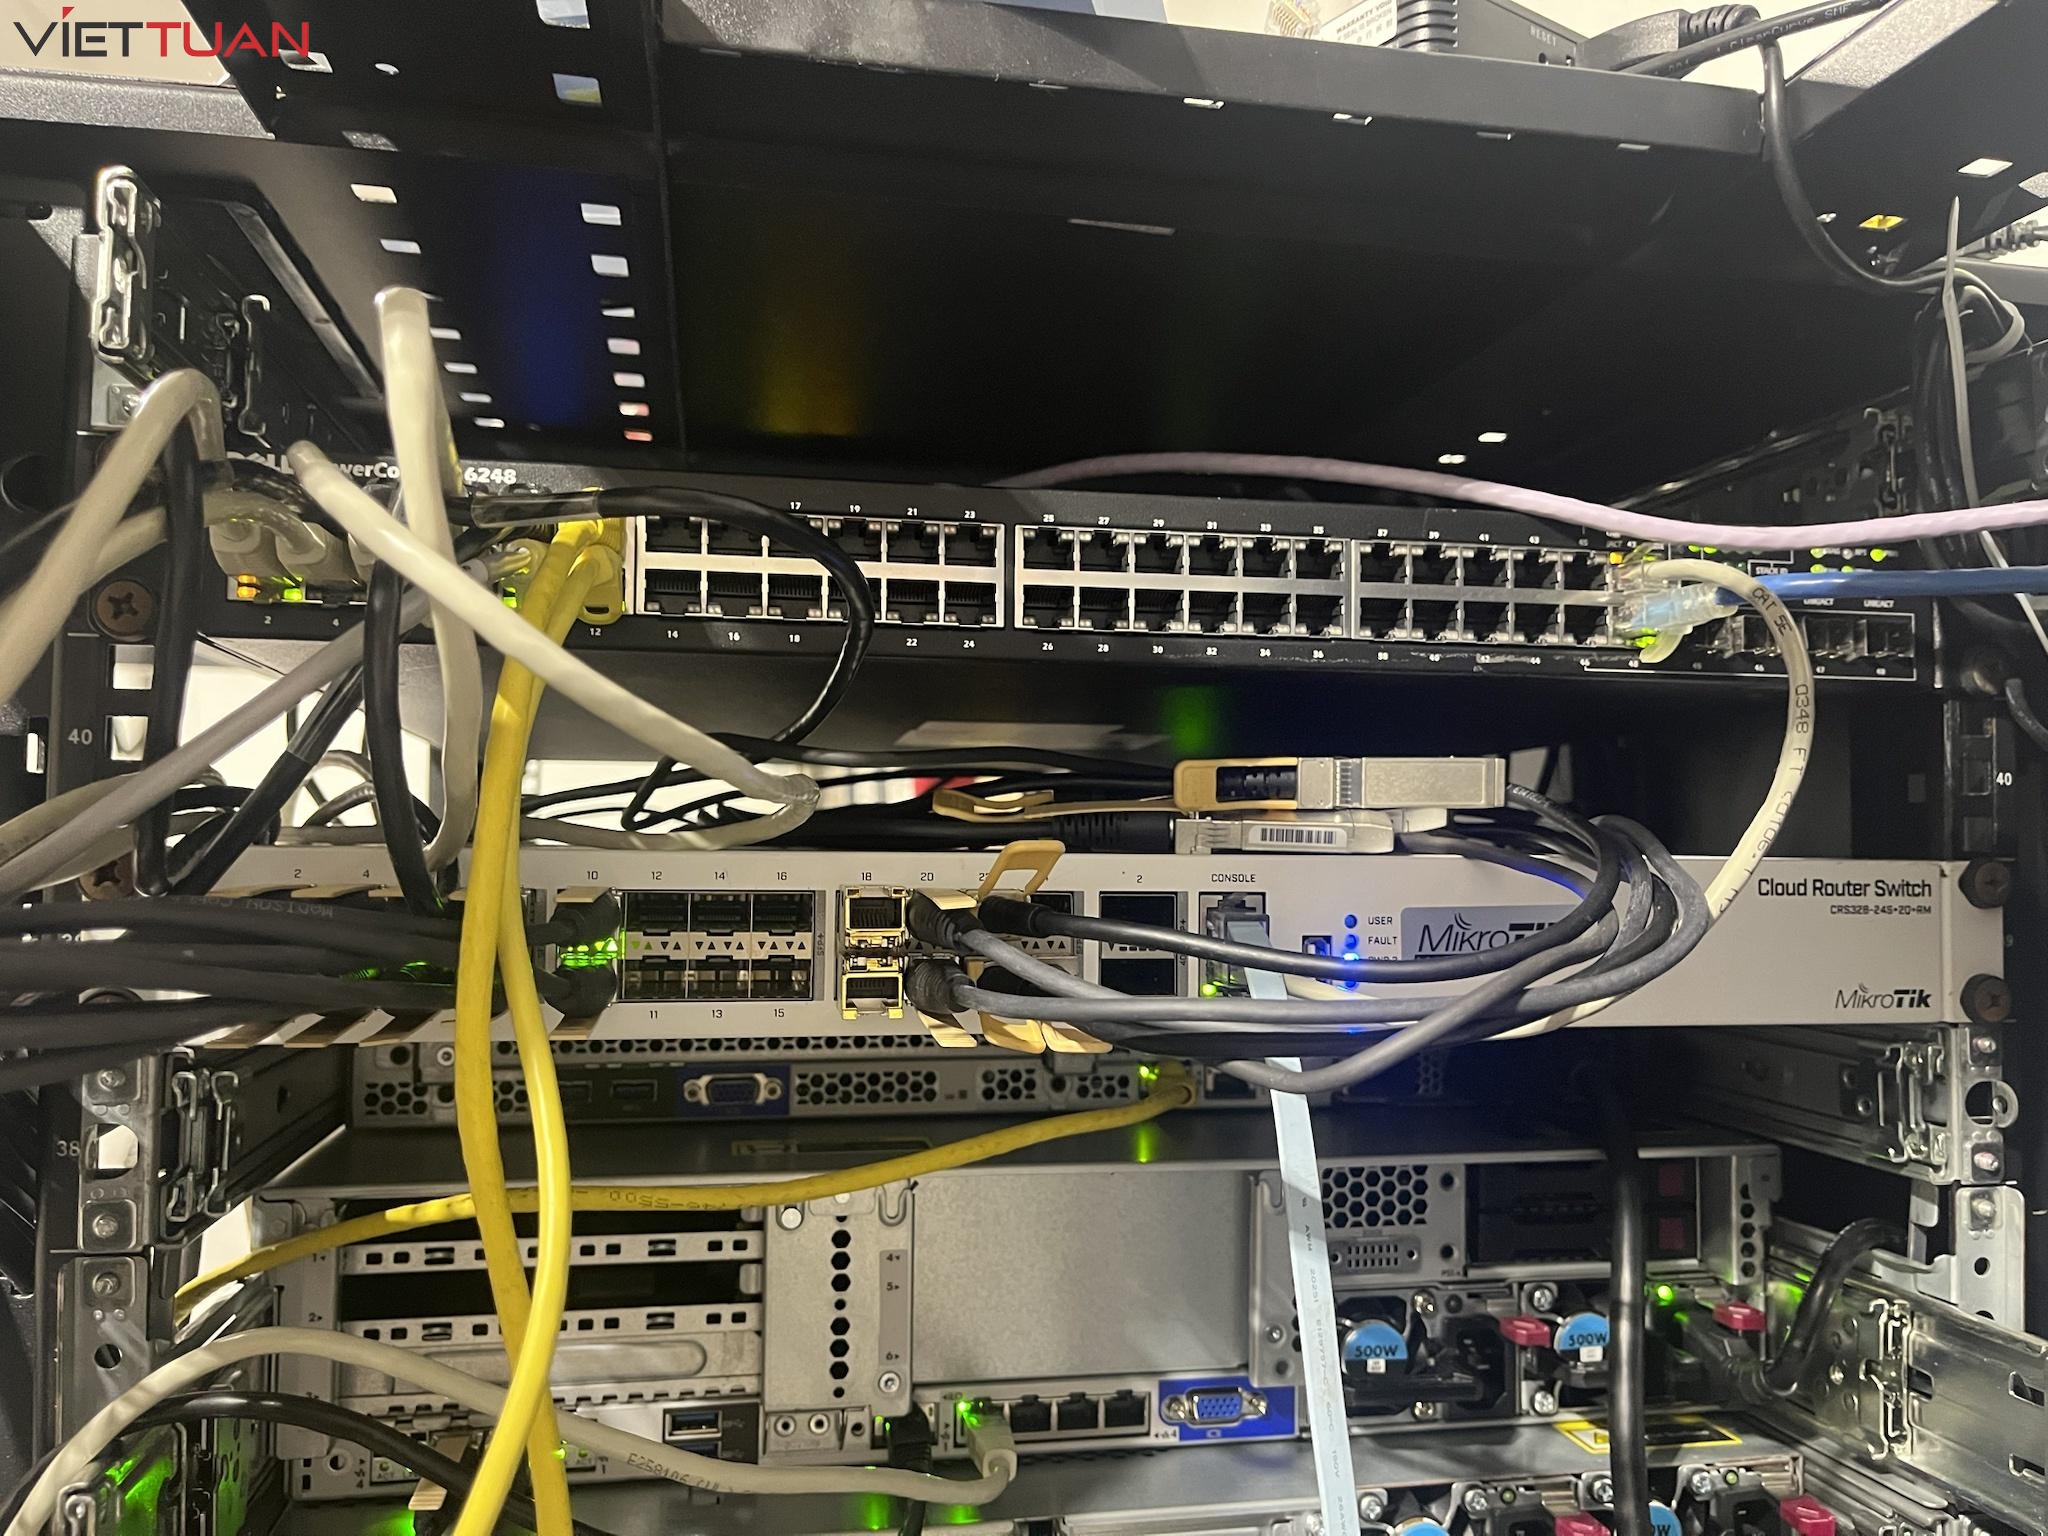 Với các cổng SFP+ và QSFP+, CRS326-24S+2Q+RM cho phép kết nối linh hoạt với các thiết bị mạng